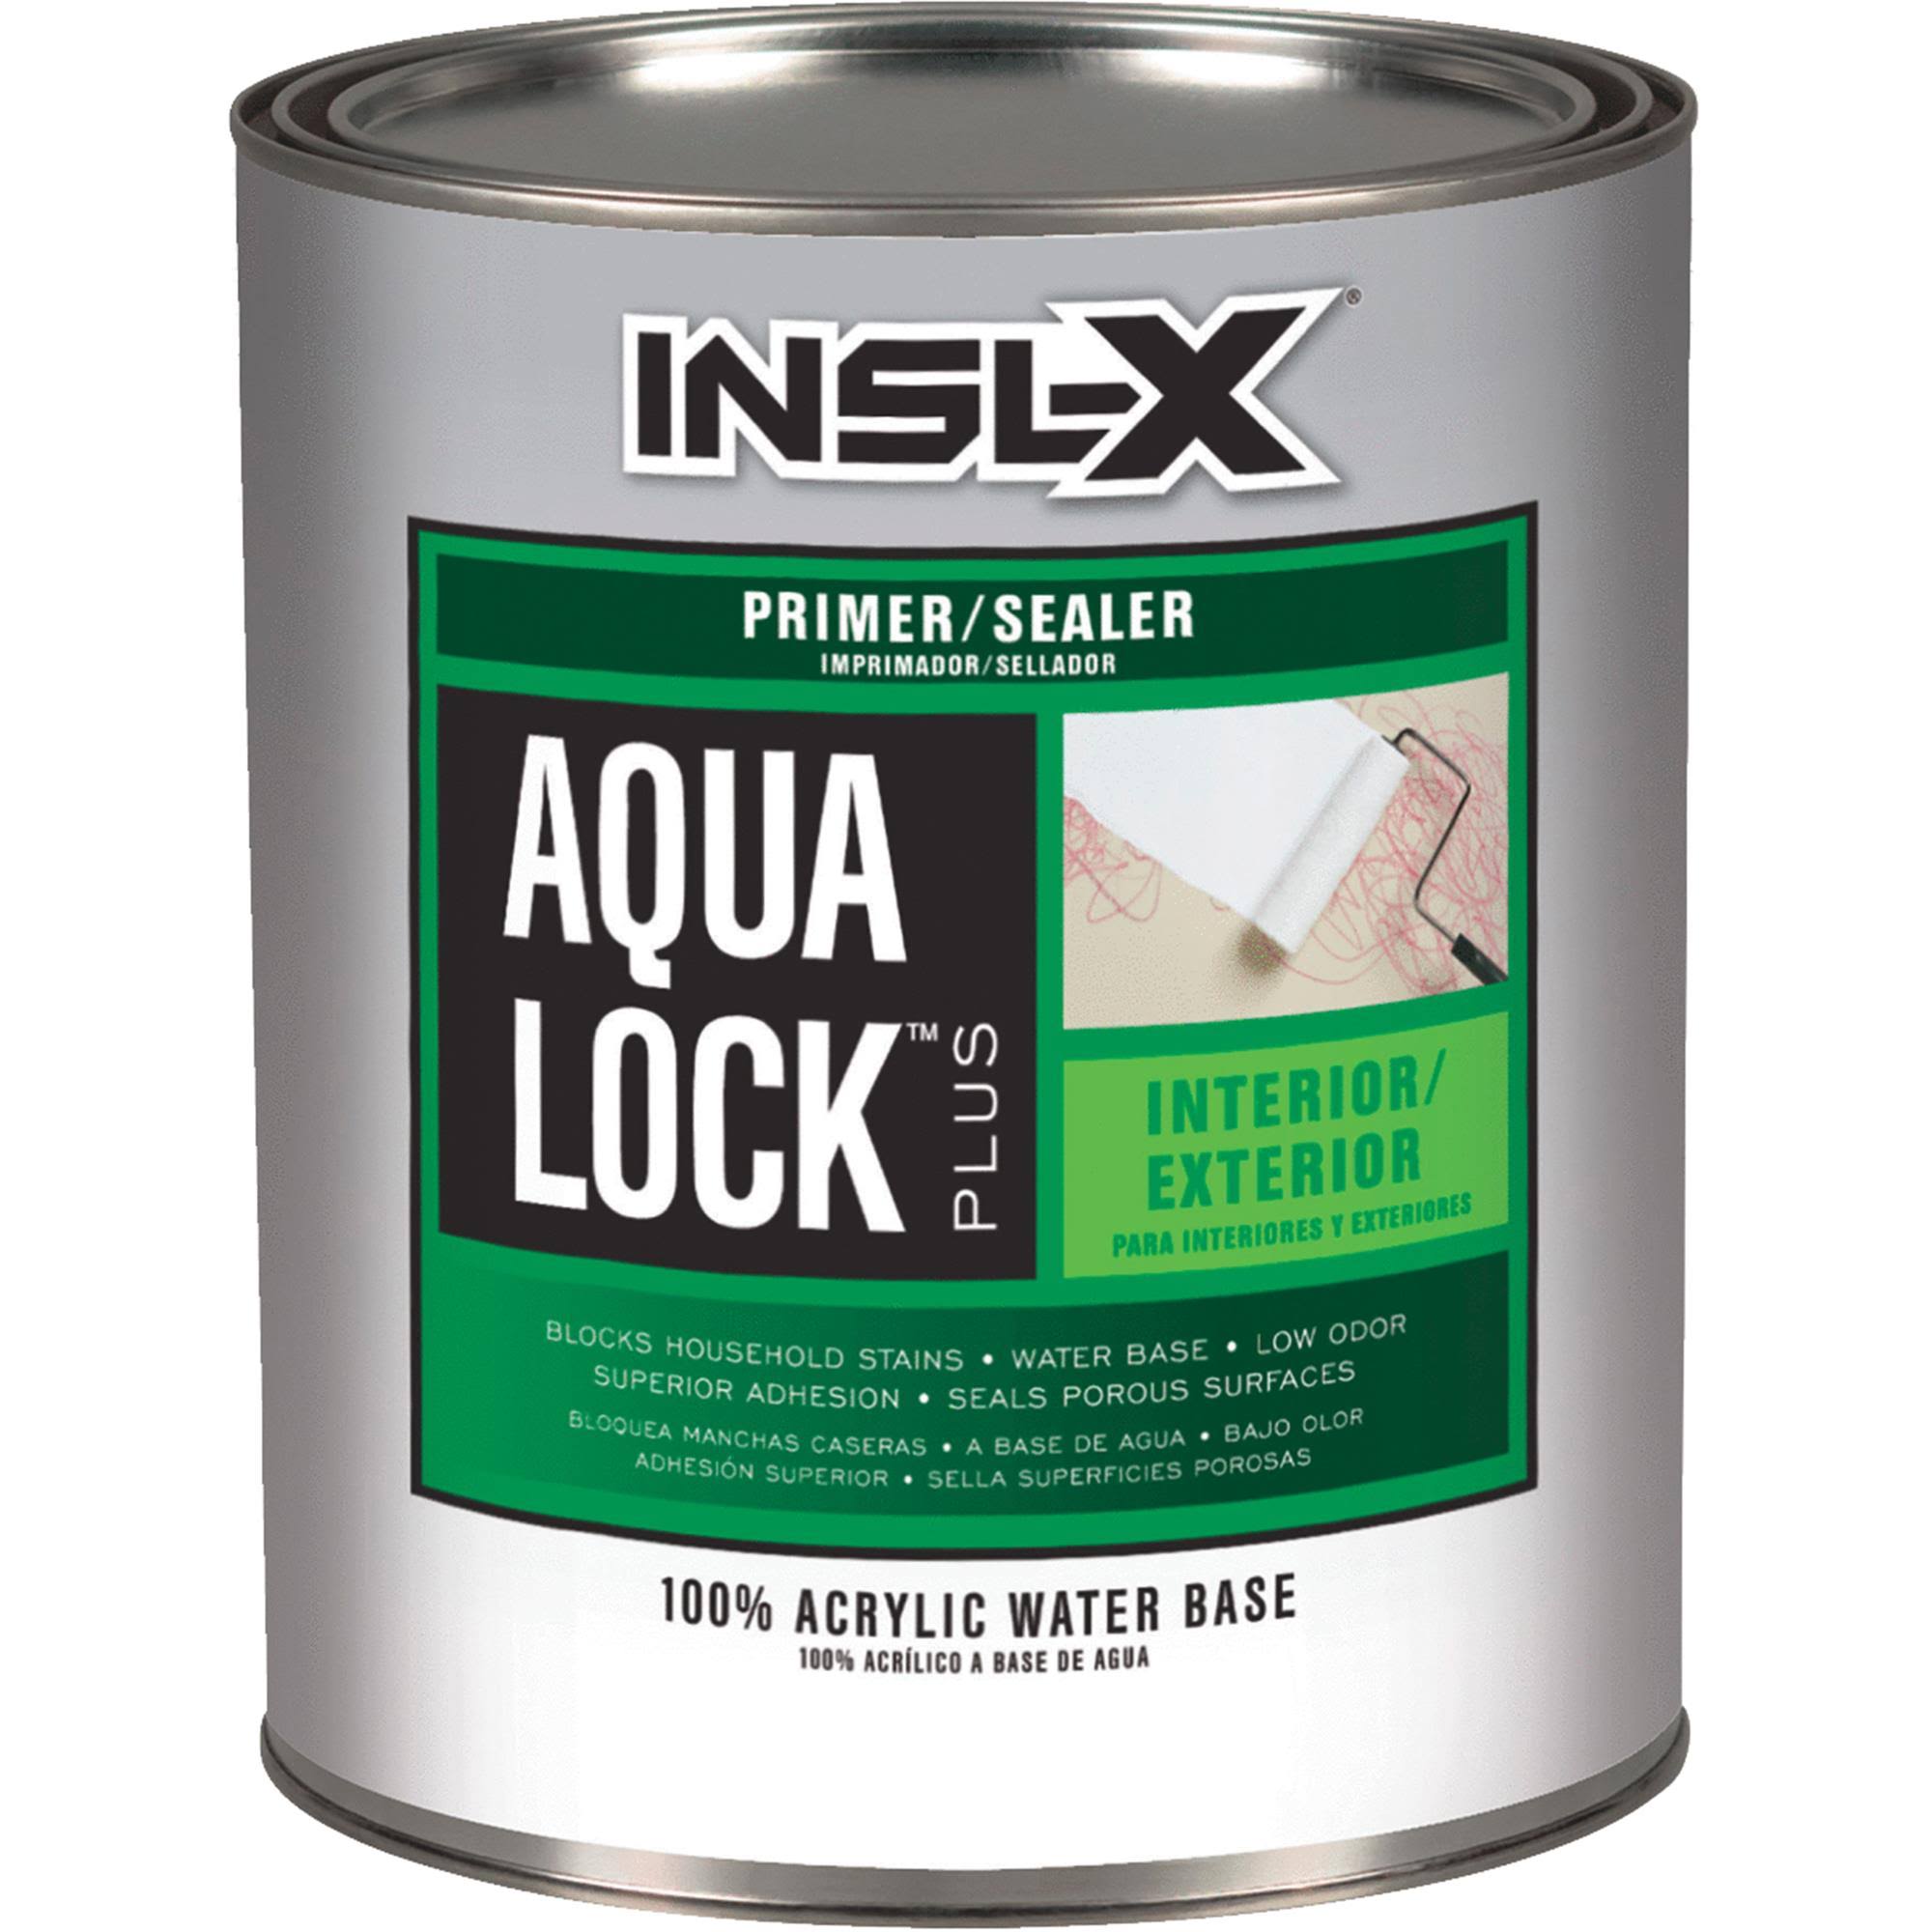 Insl-X Primer Sealer Aqualock Plus